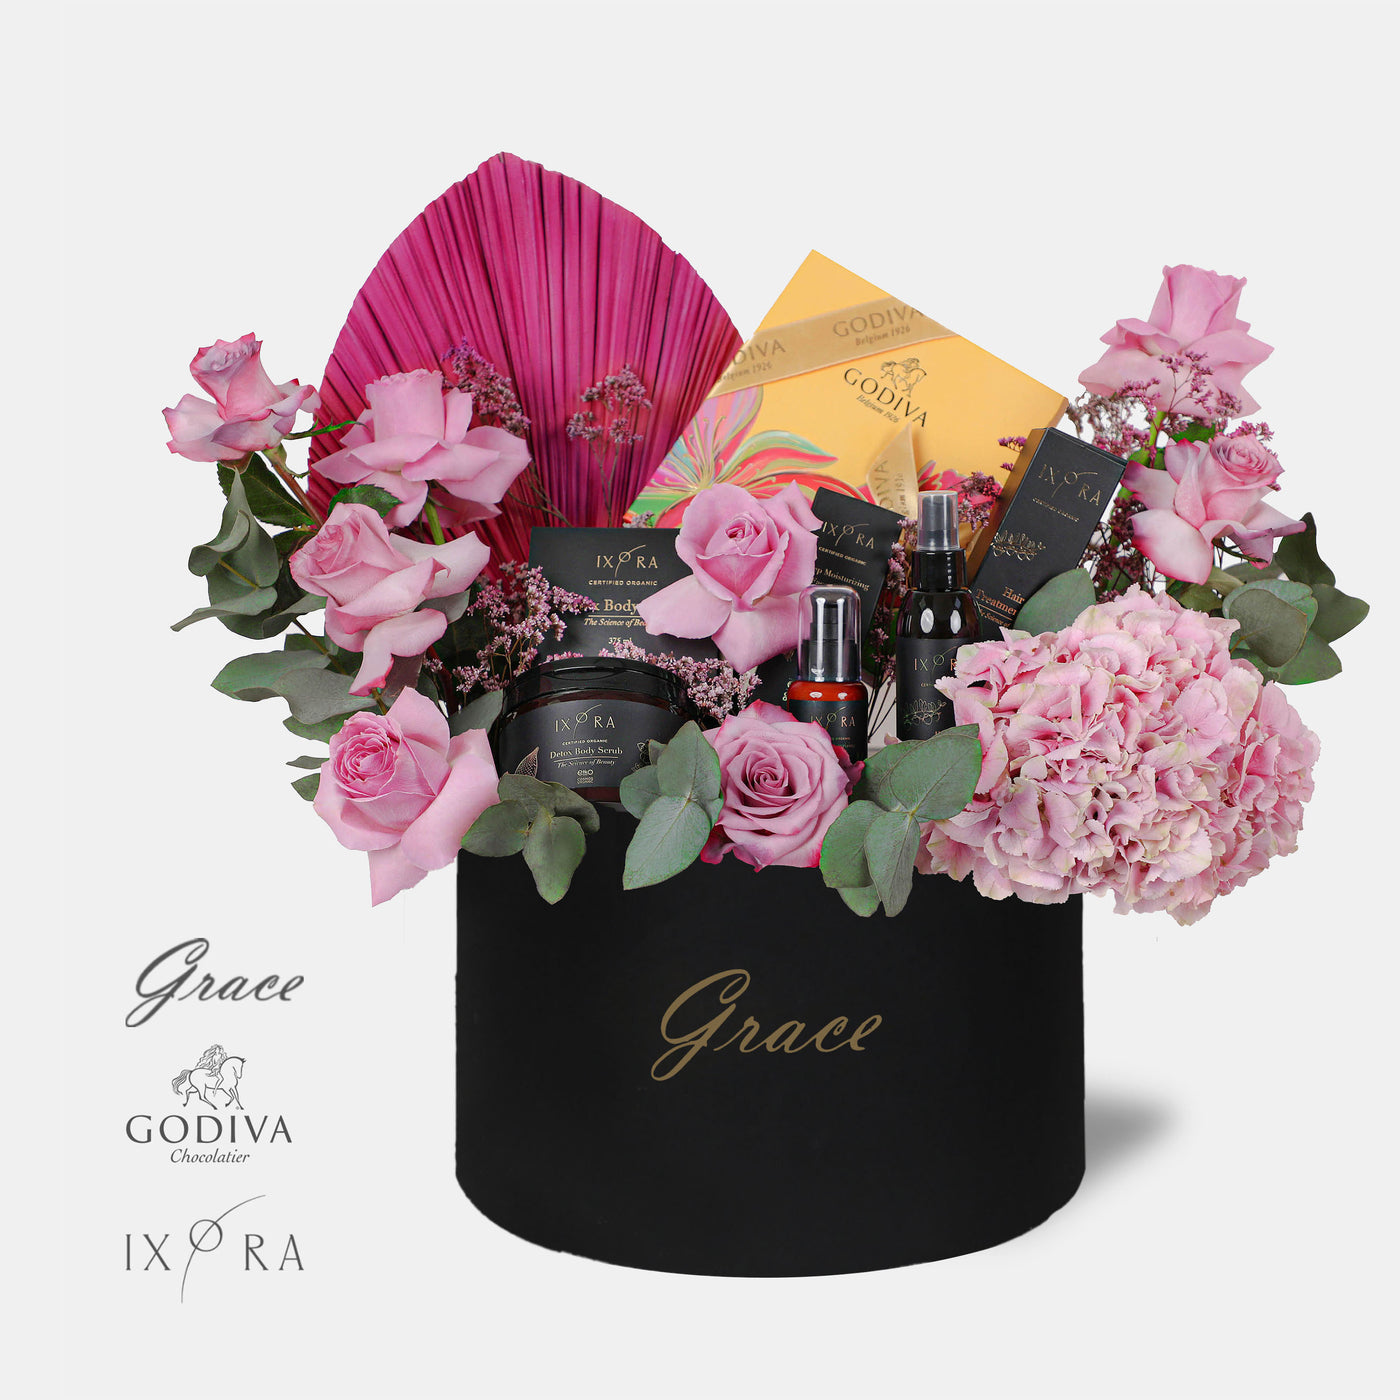 Her Majesty (IXORA & Godiva Chocolate)